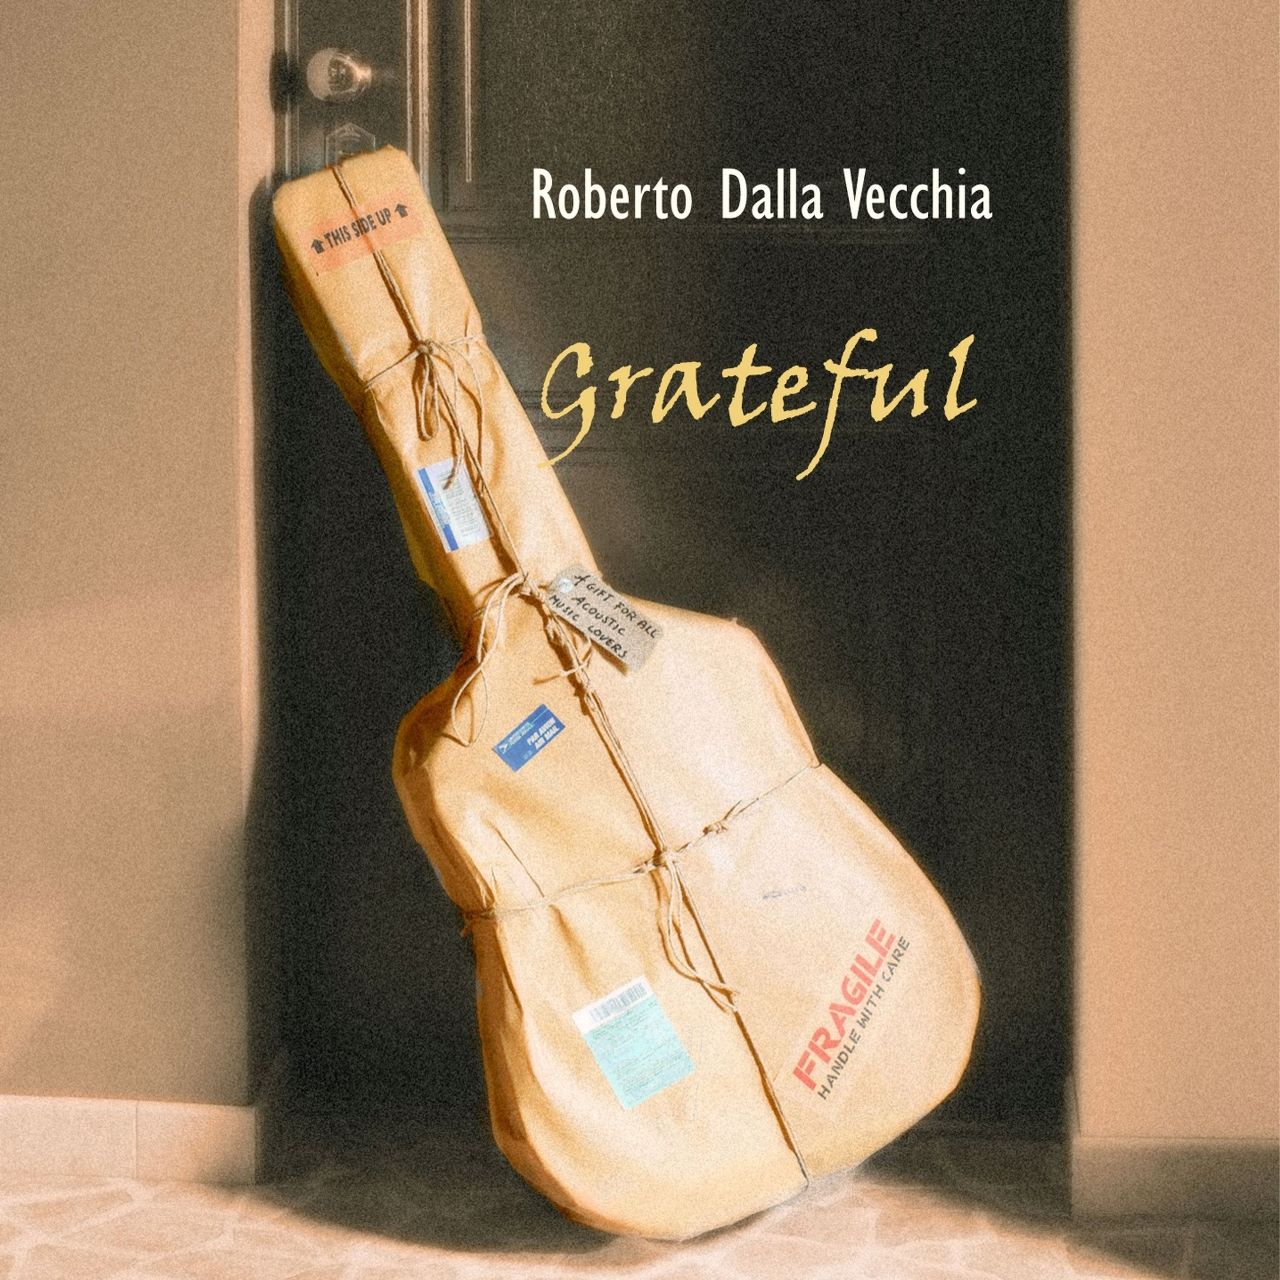 Roberto Dalla Vecchia – Gratefu cover album